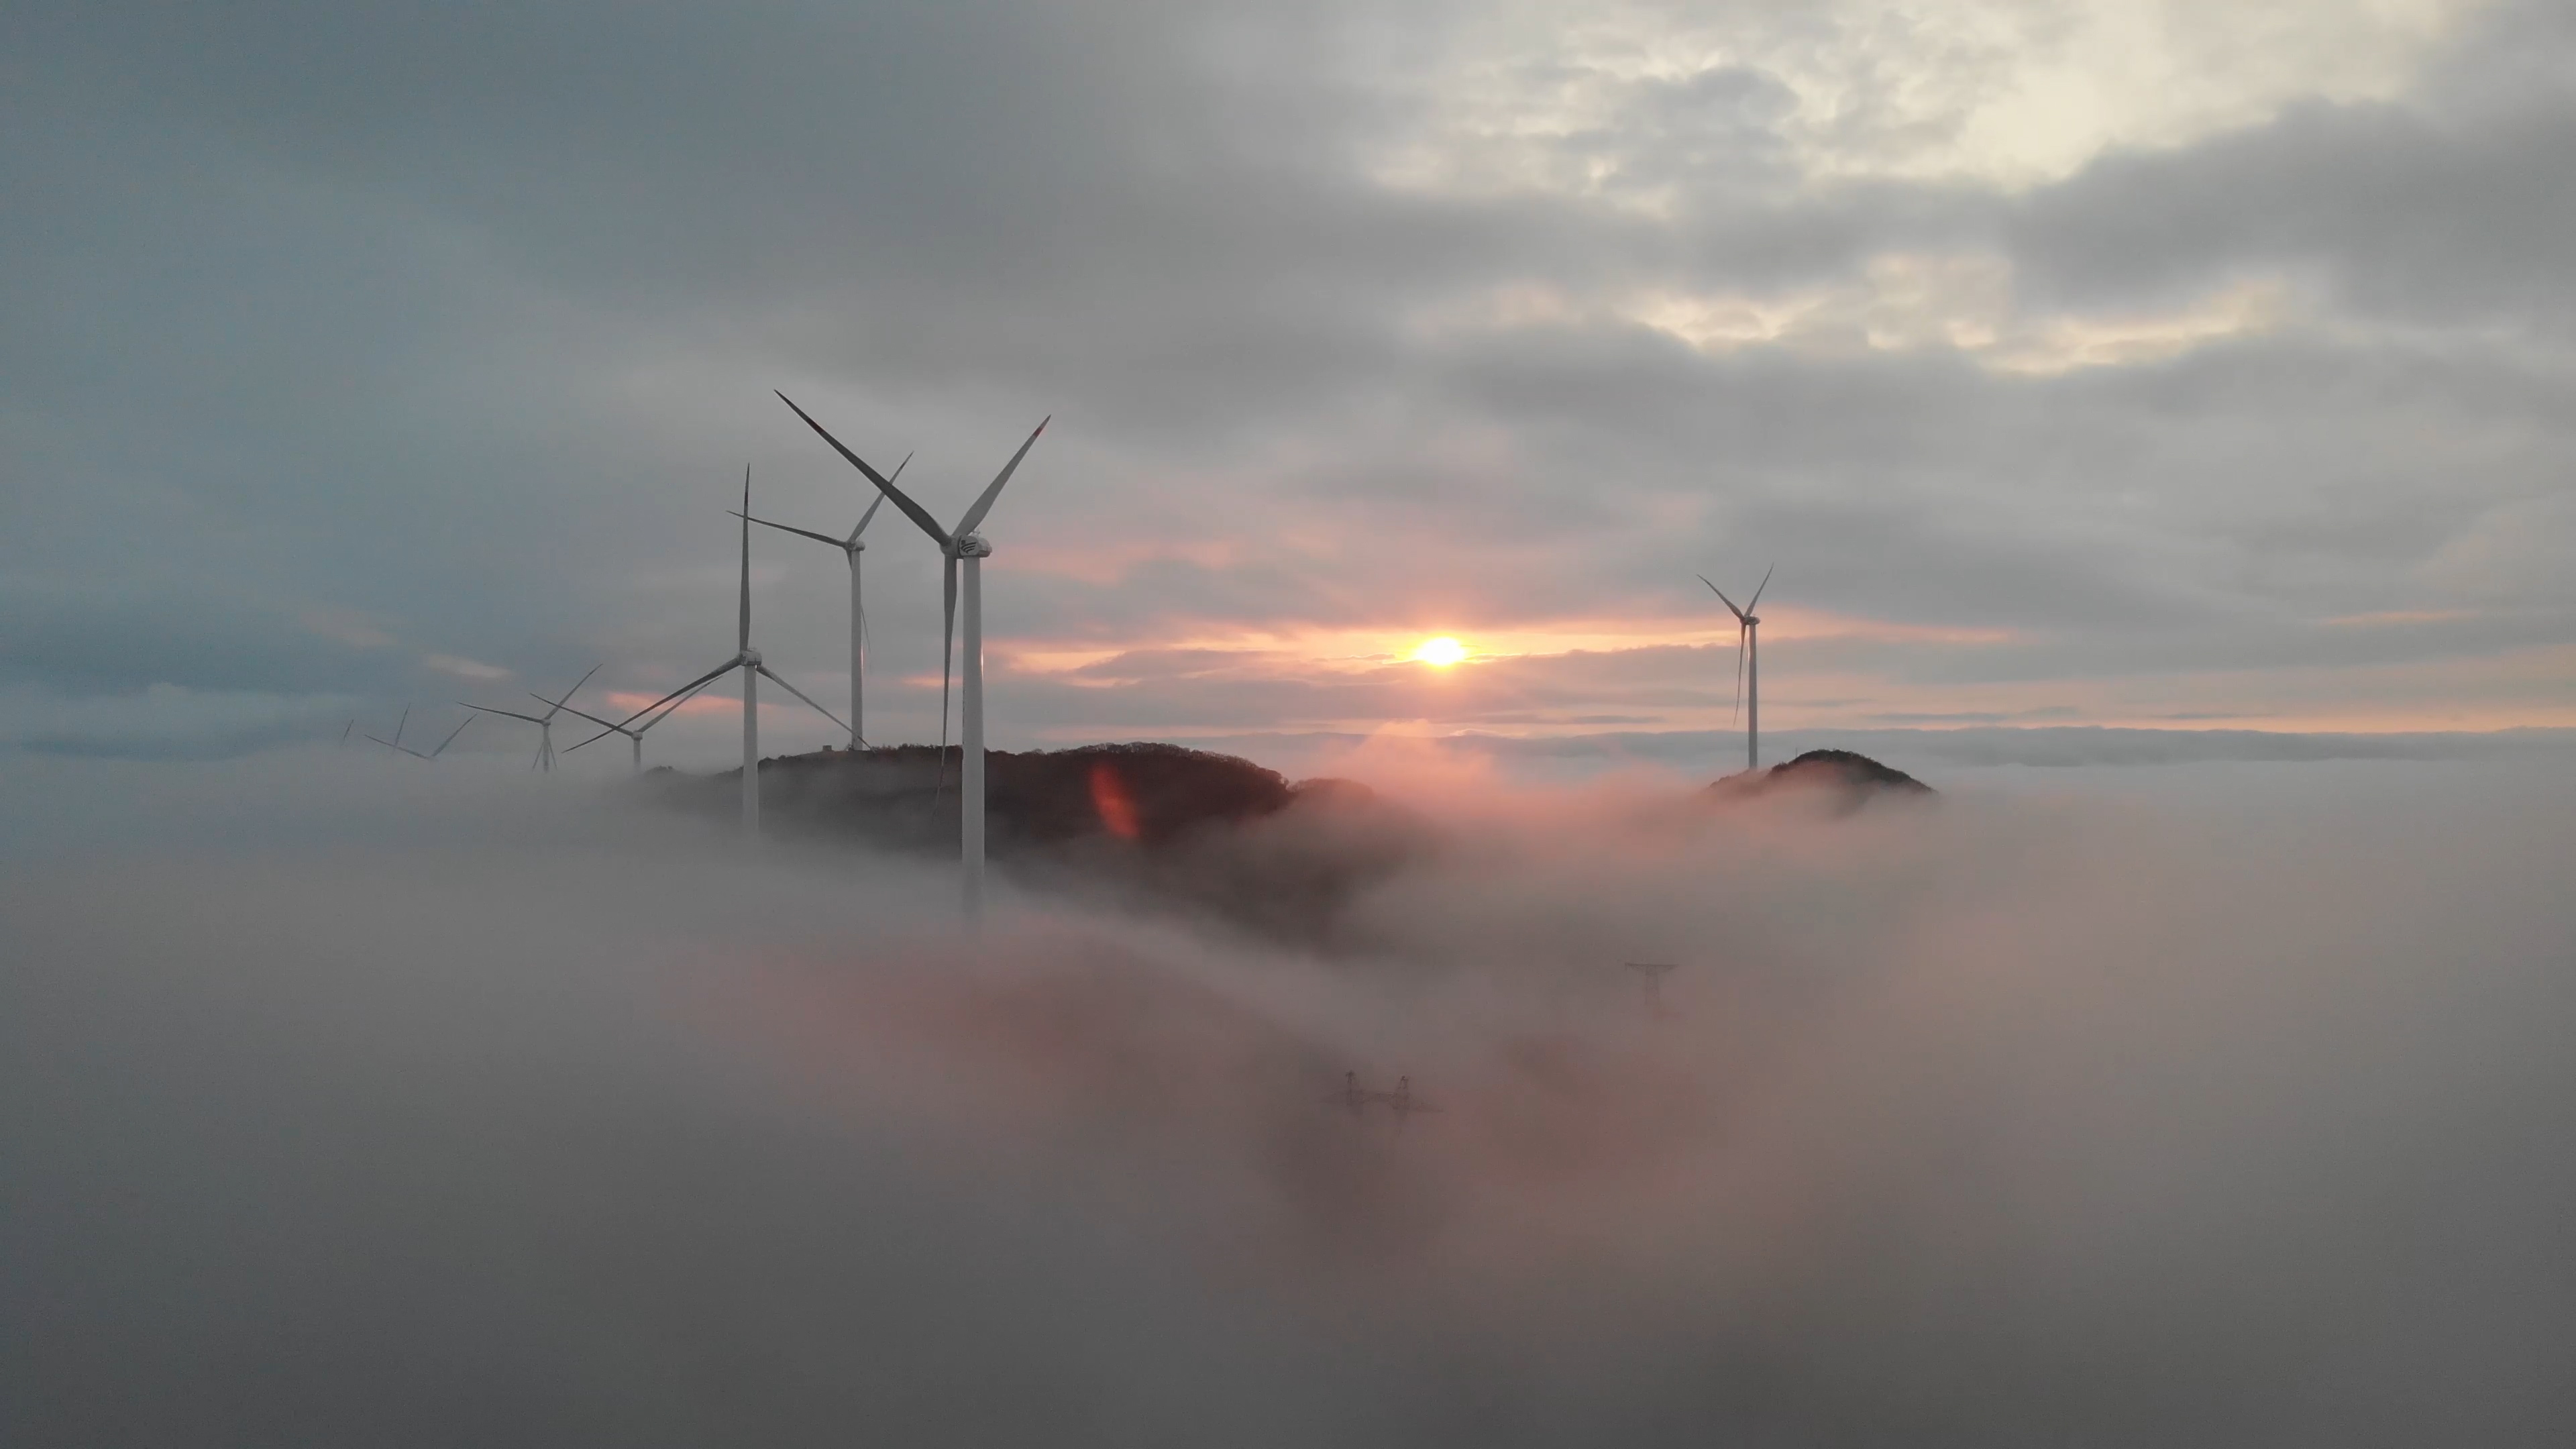 龍源電力河南龍源新能源發展有限公司項城50MW風電項目35kV場內集電線路工程施工